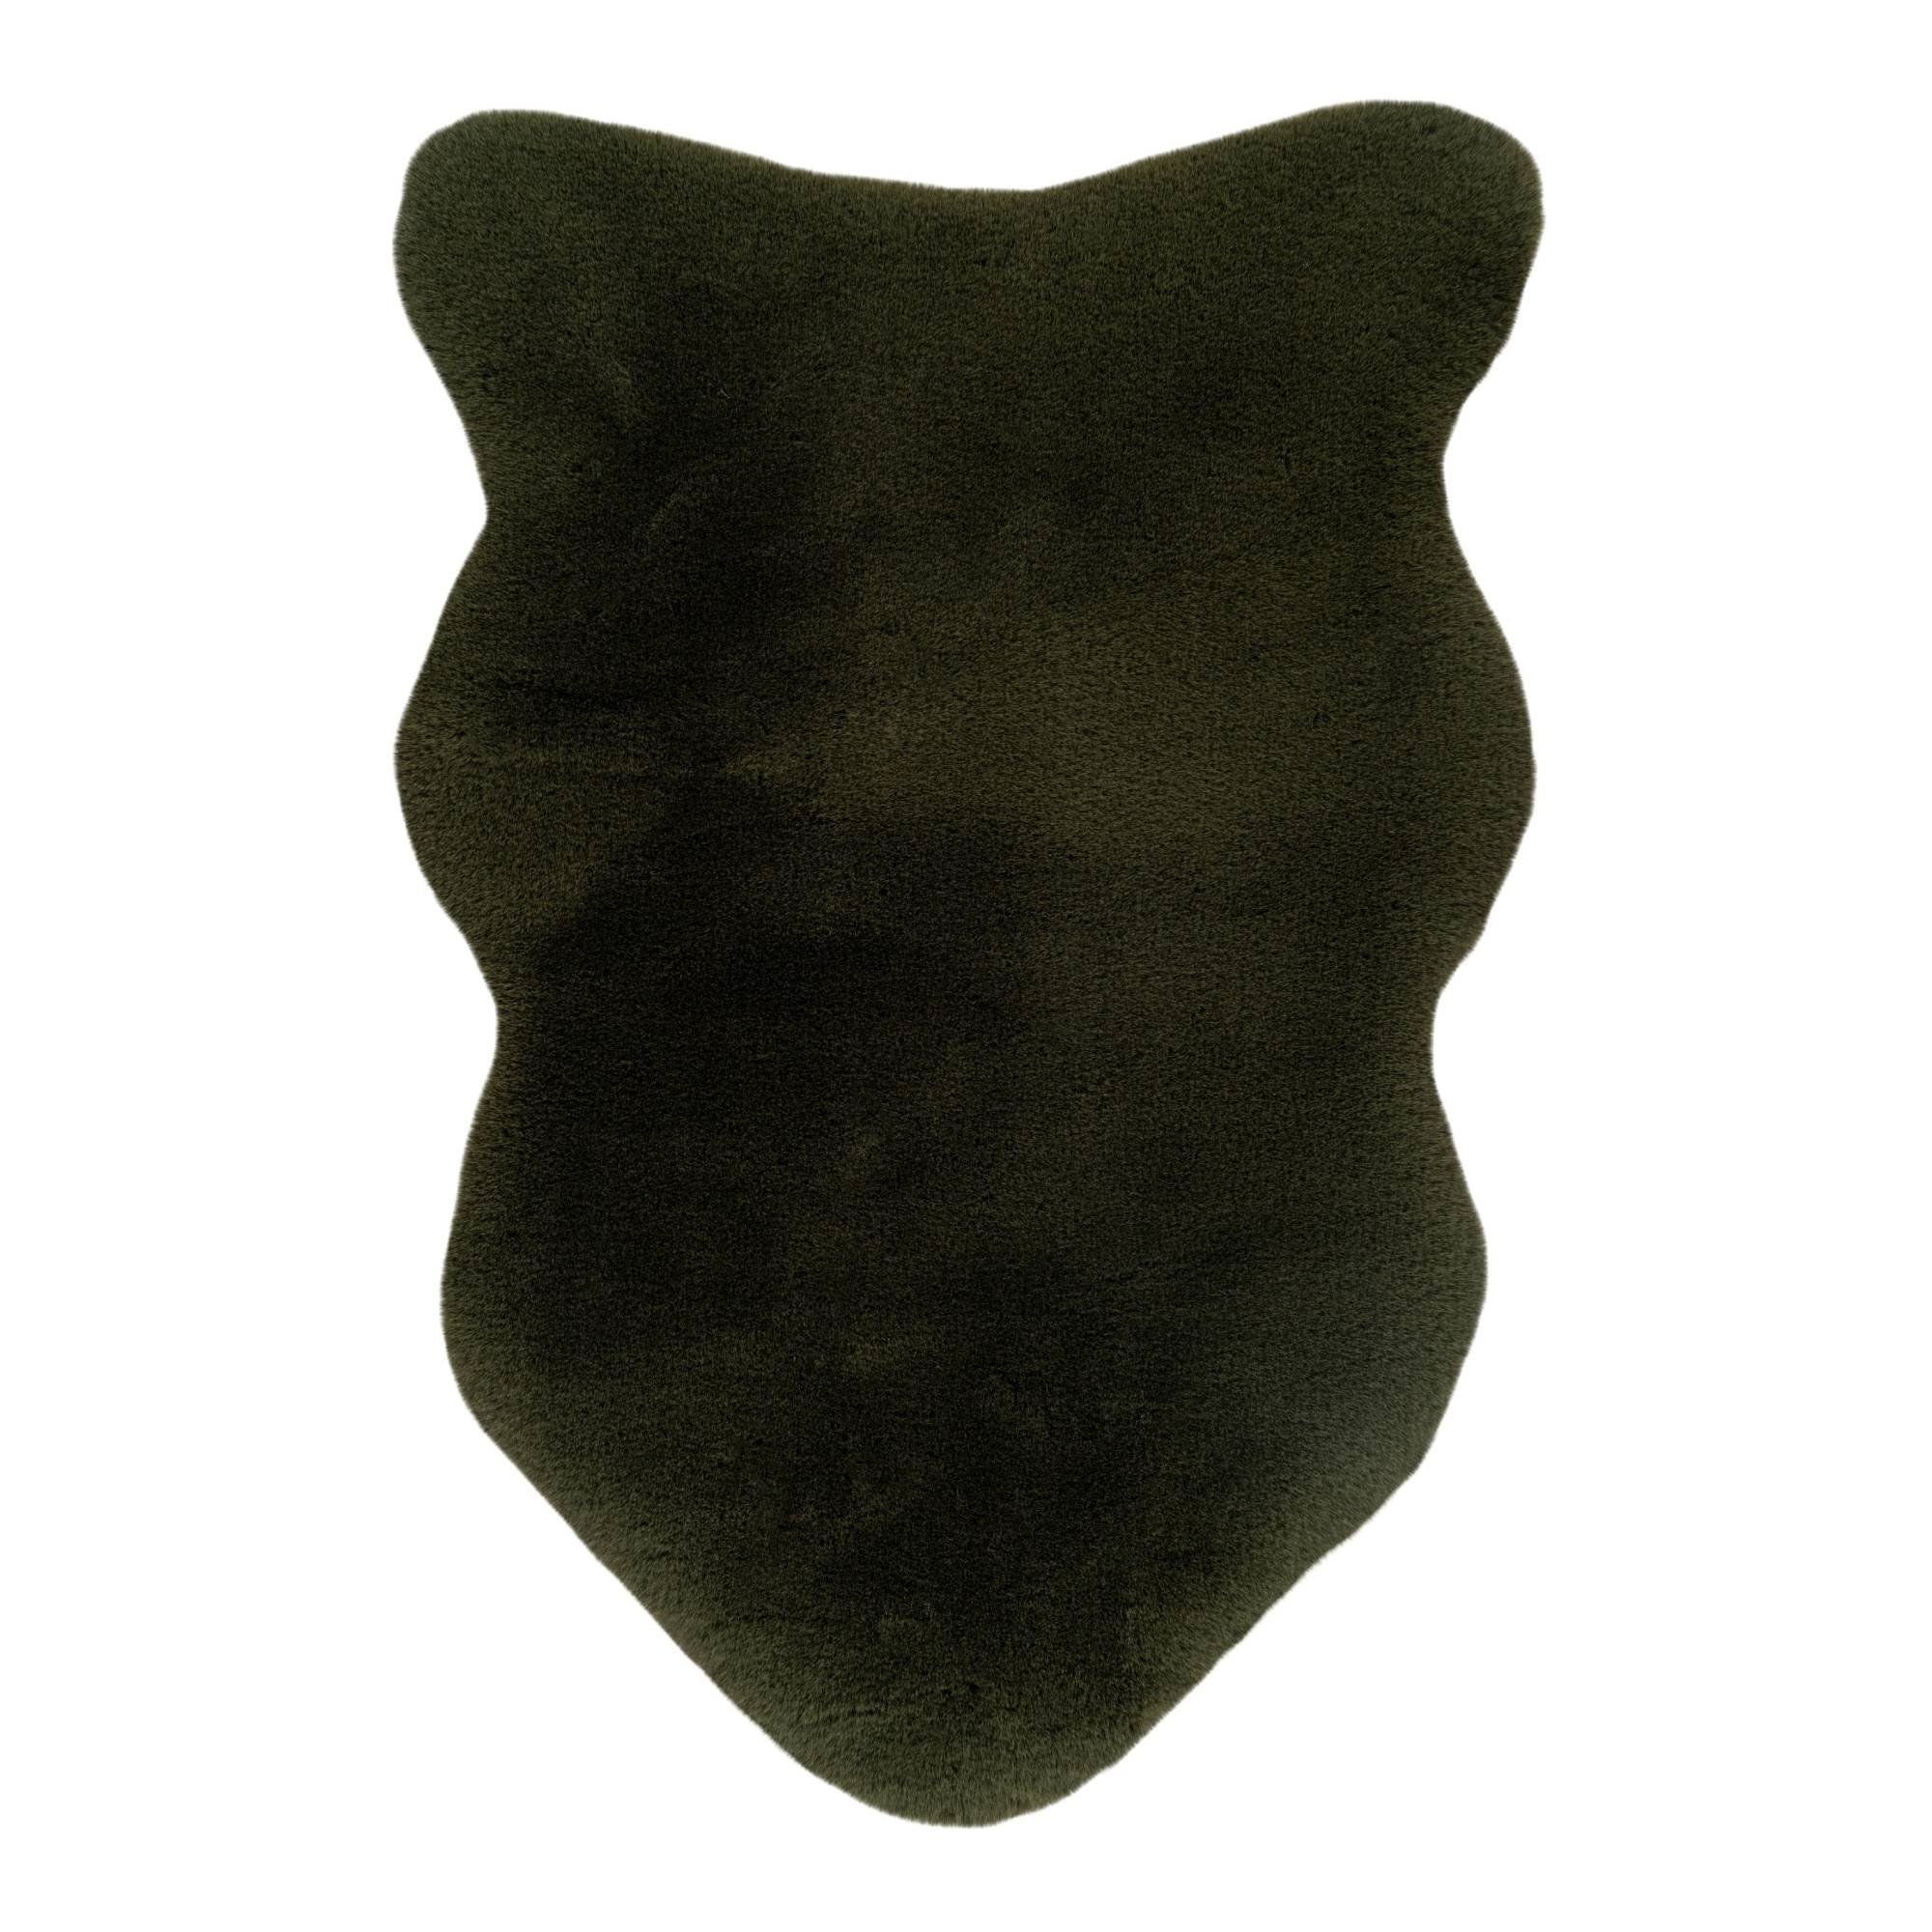 Fellteppich HEAVEN, GMD Living, Fellförmig, Höhe: 35 mm, flauschiger Kunstfell-Teppich, 60 x 90 cm basil (dunkelgrün)